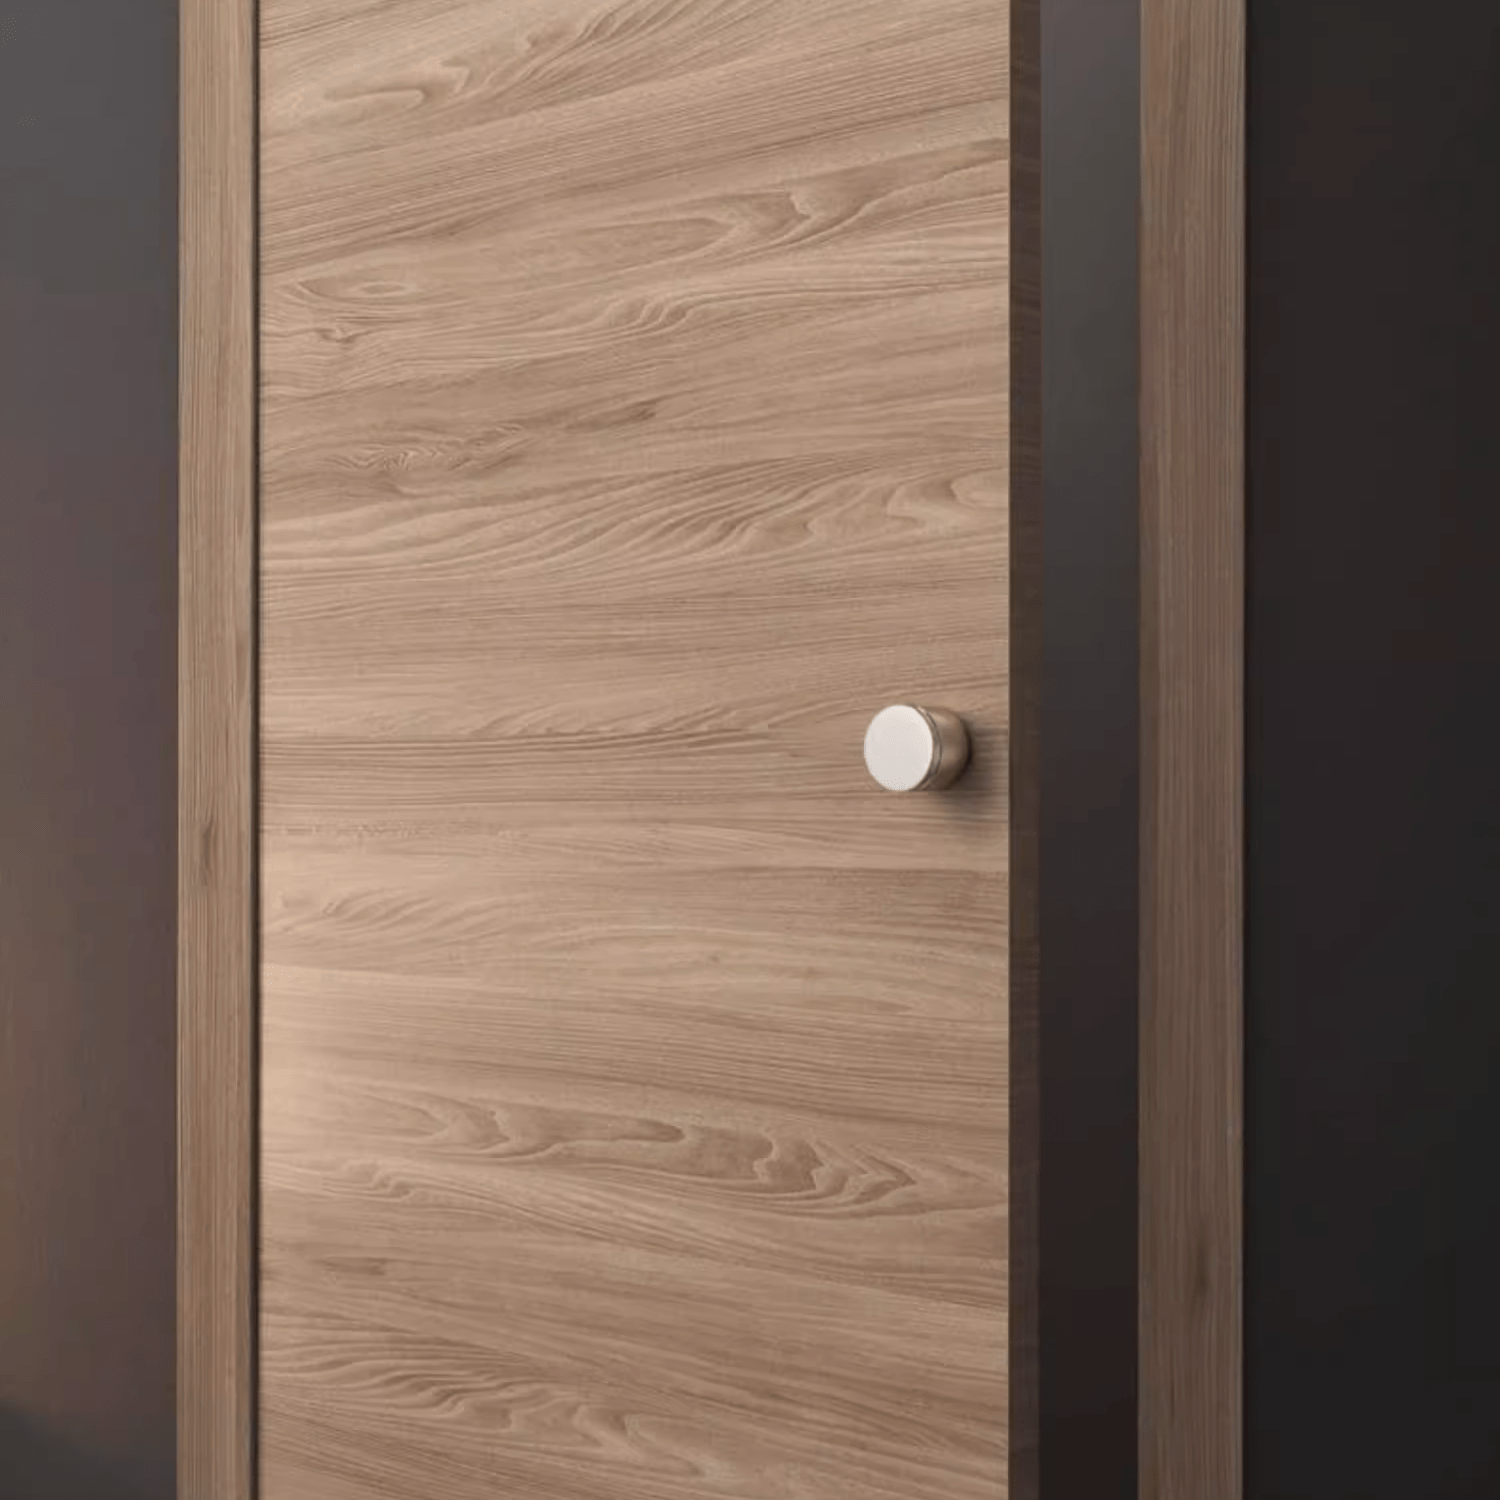 Goo-Ki Titanium Silver / All Set Silver Knurled Ball Door Lock Indoor Wooden Door Handle Bathroom Keyless Door Lock